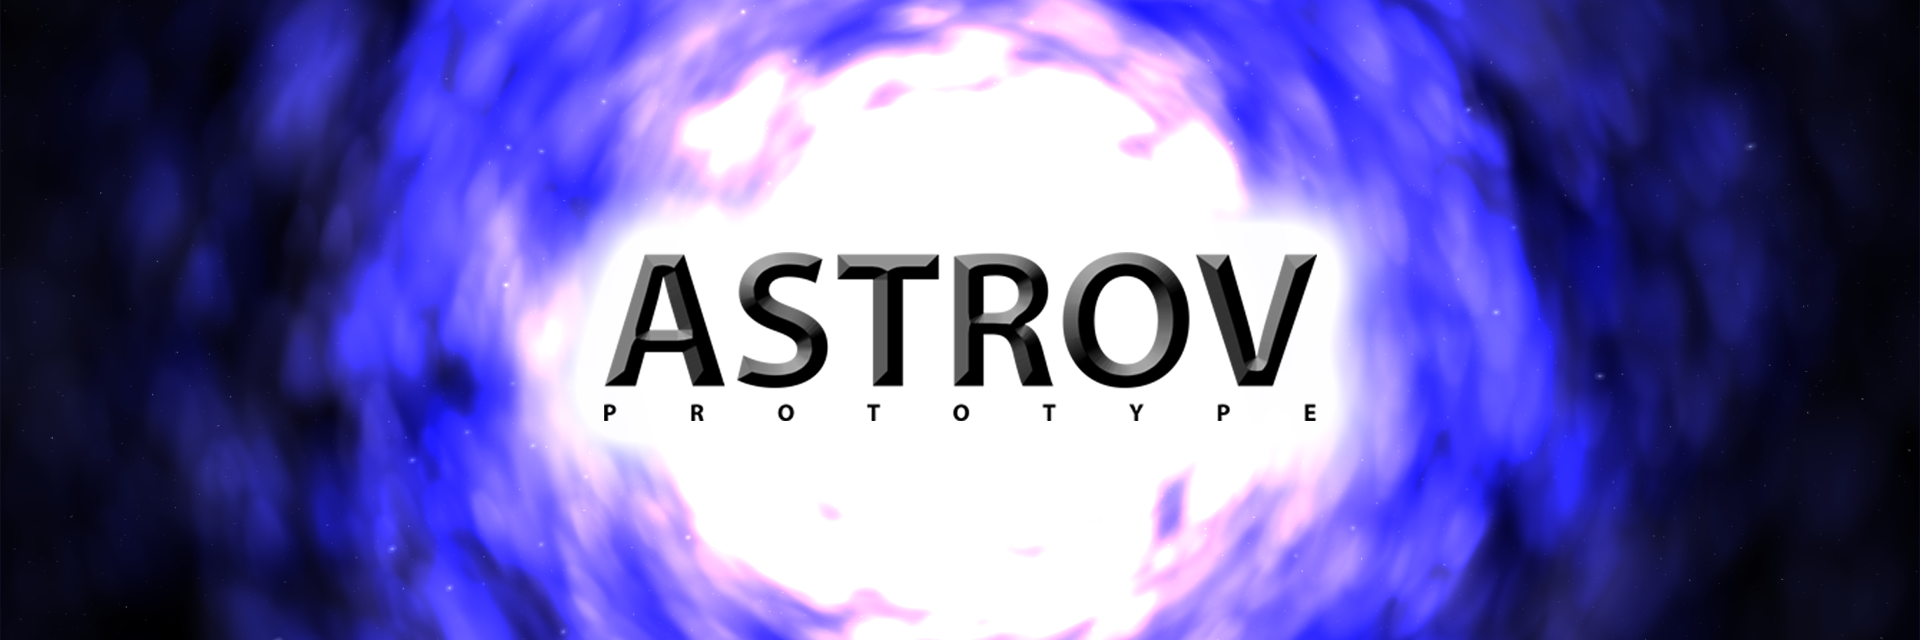 Astrov Prototype